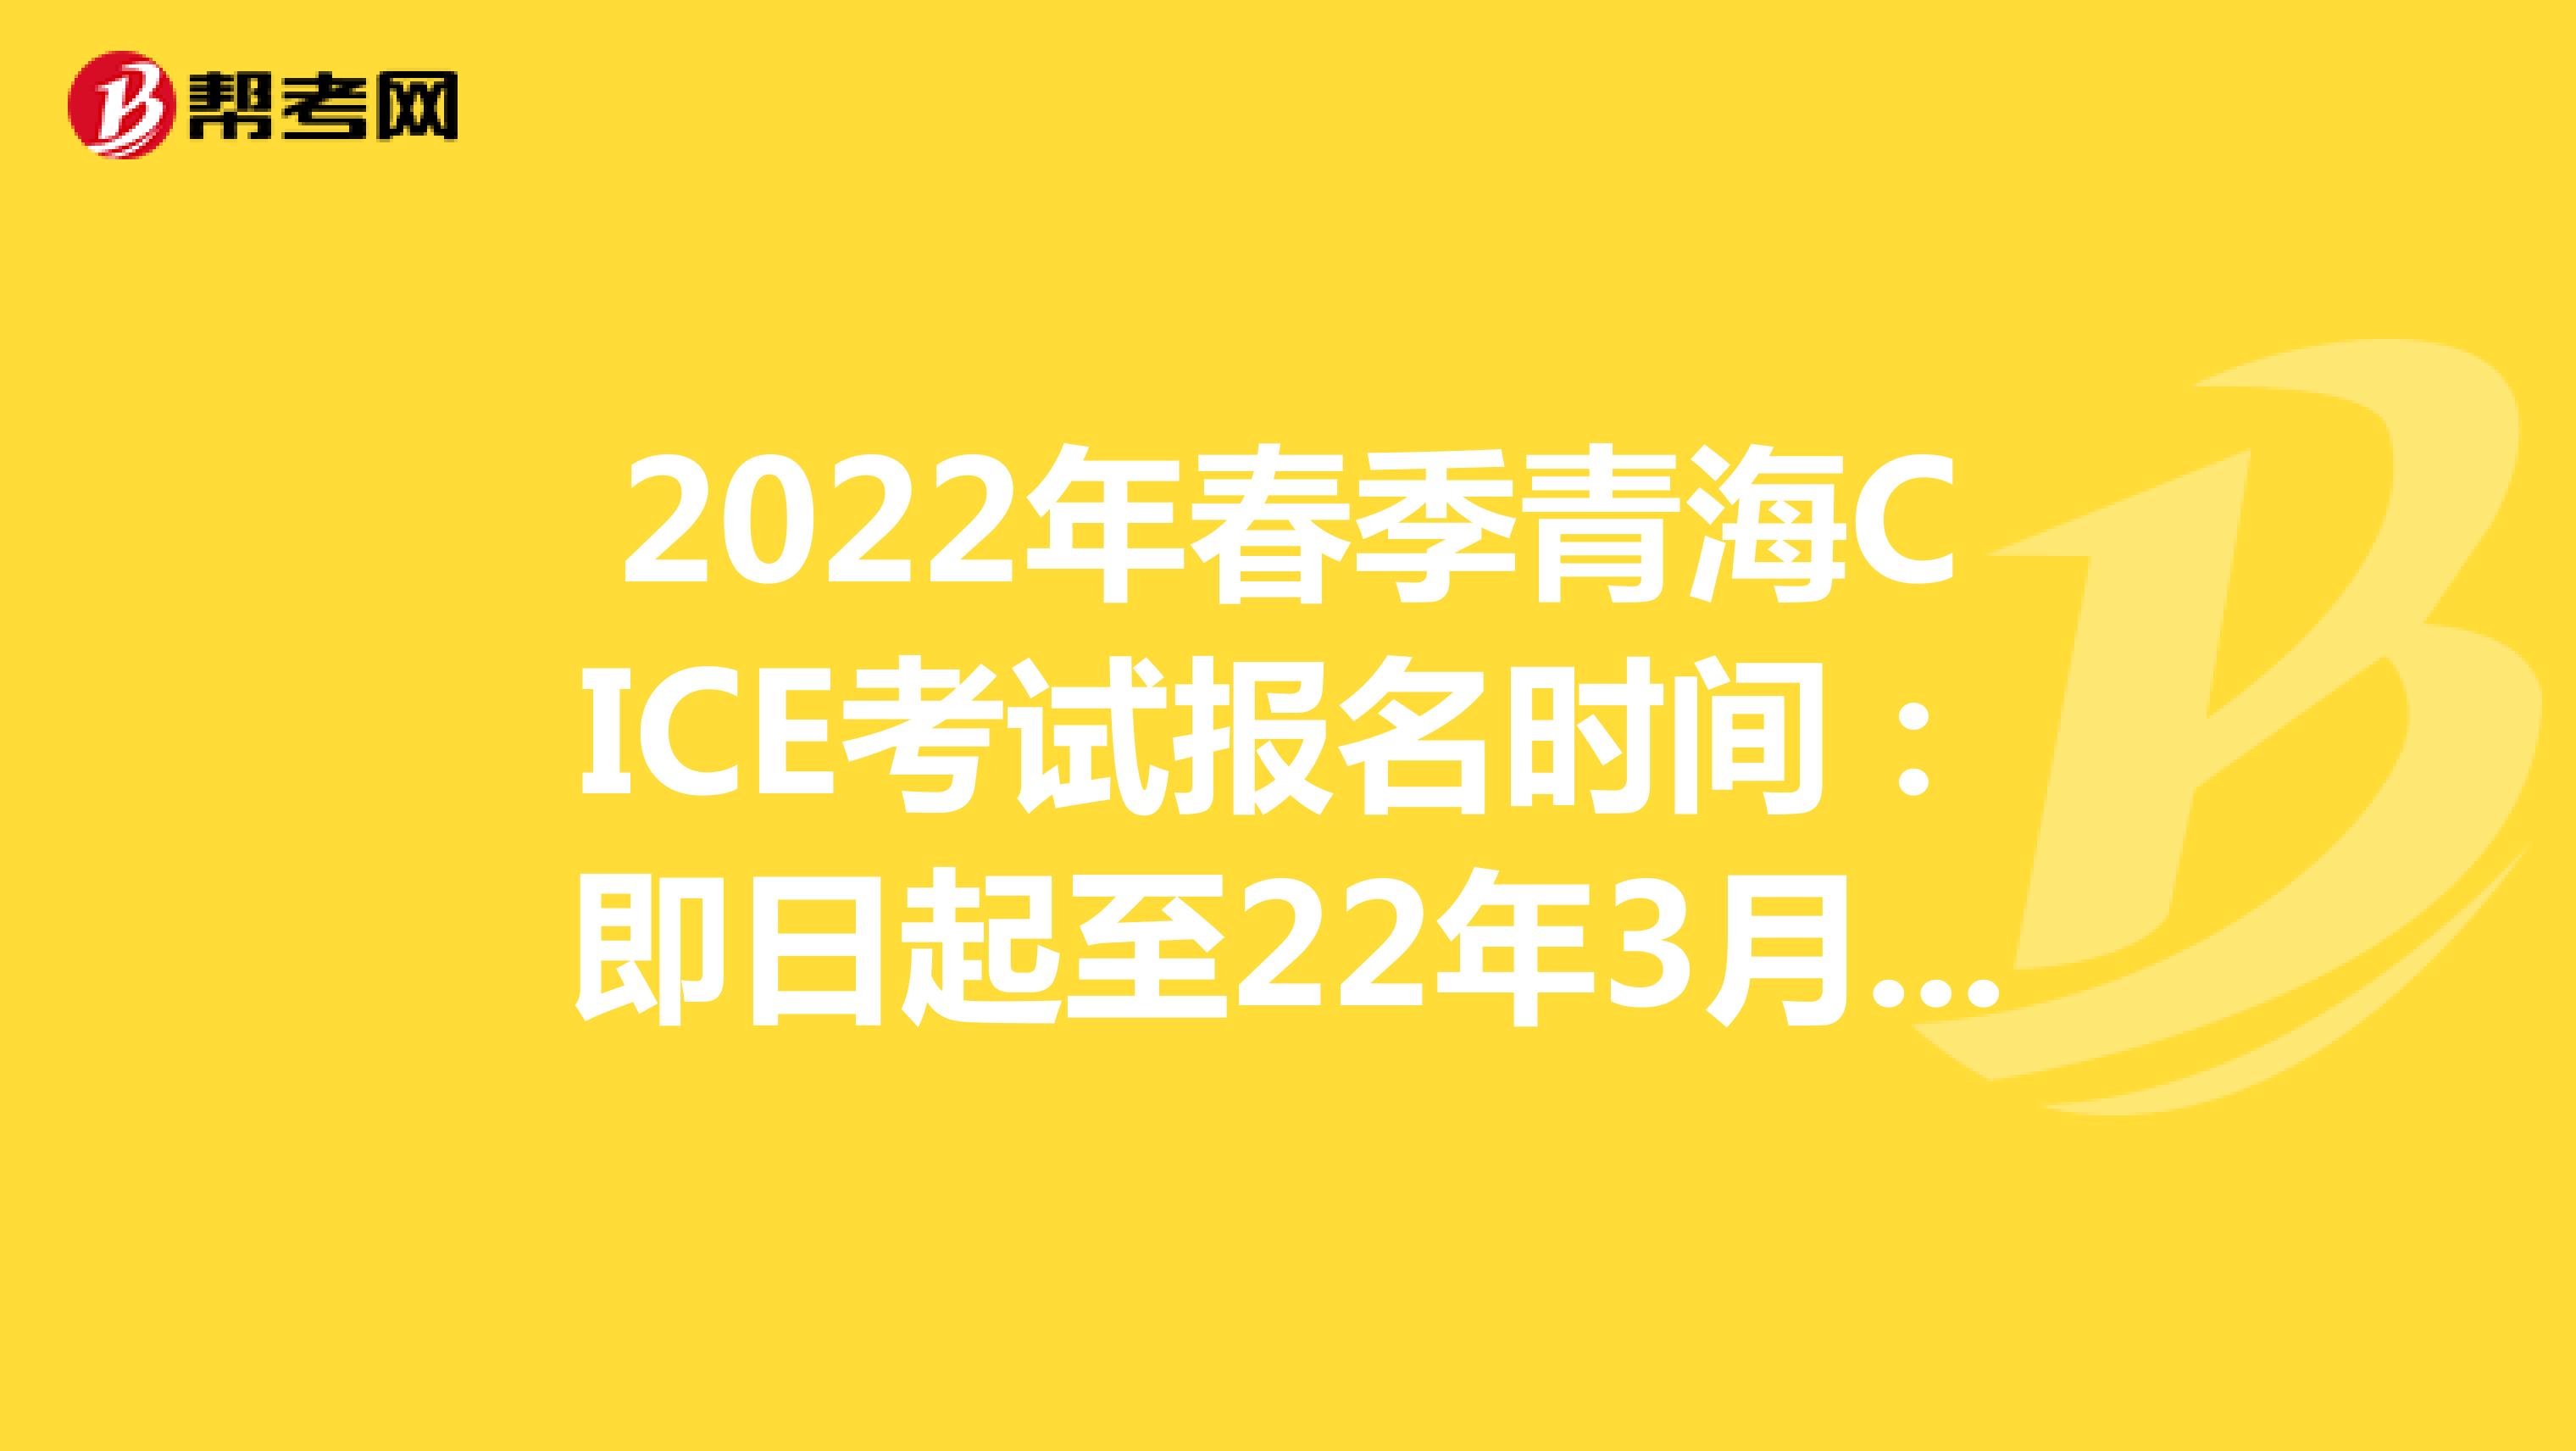 2022年春季青海CICE考试报名时间：即日起至22年3月31日